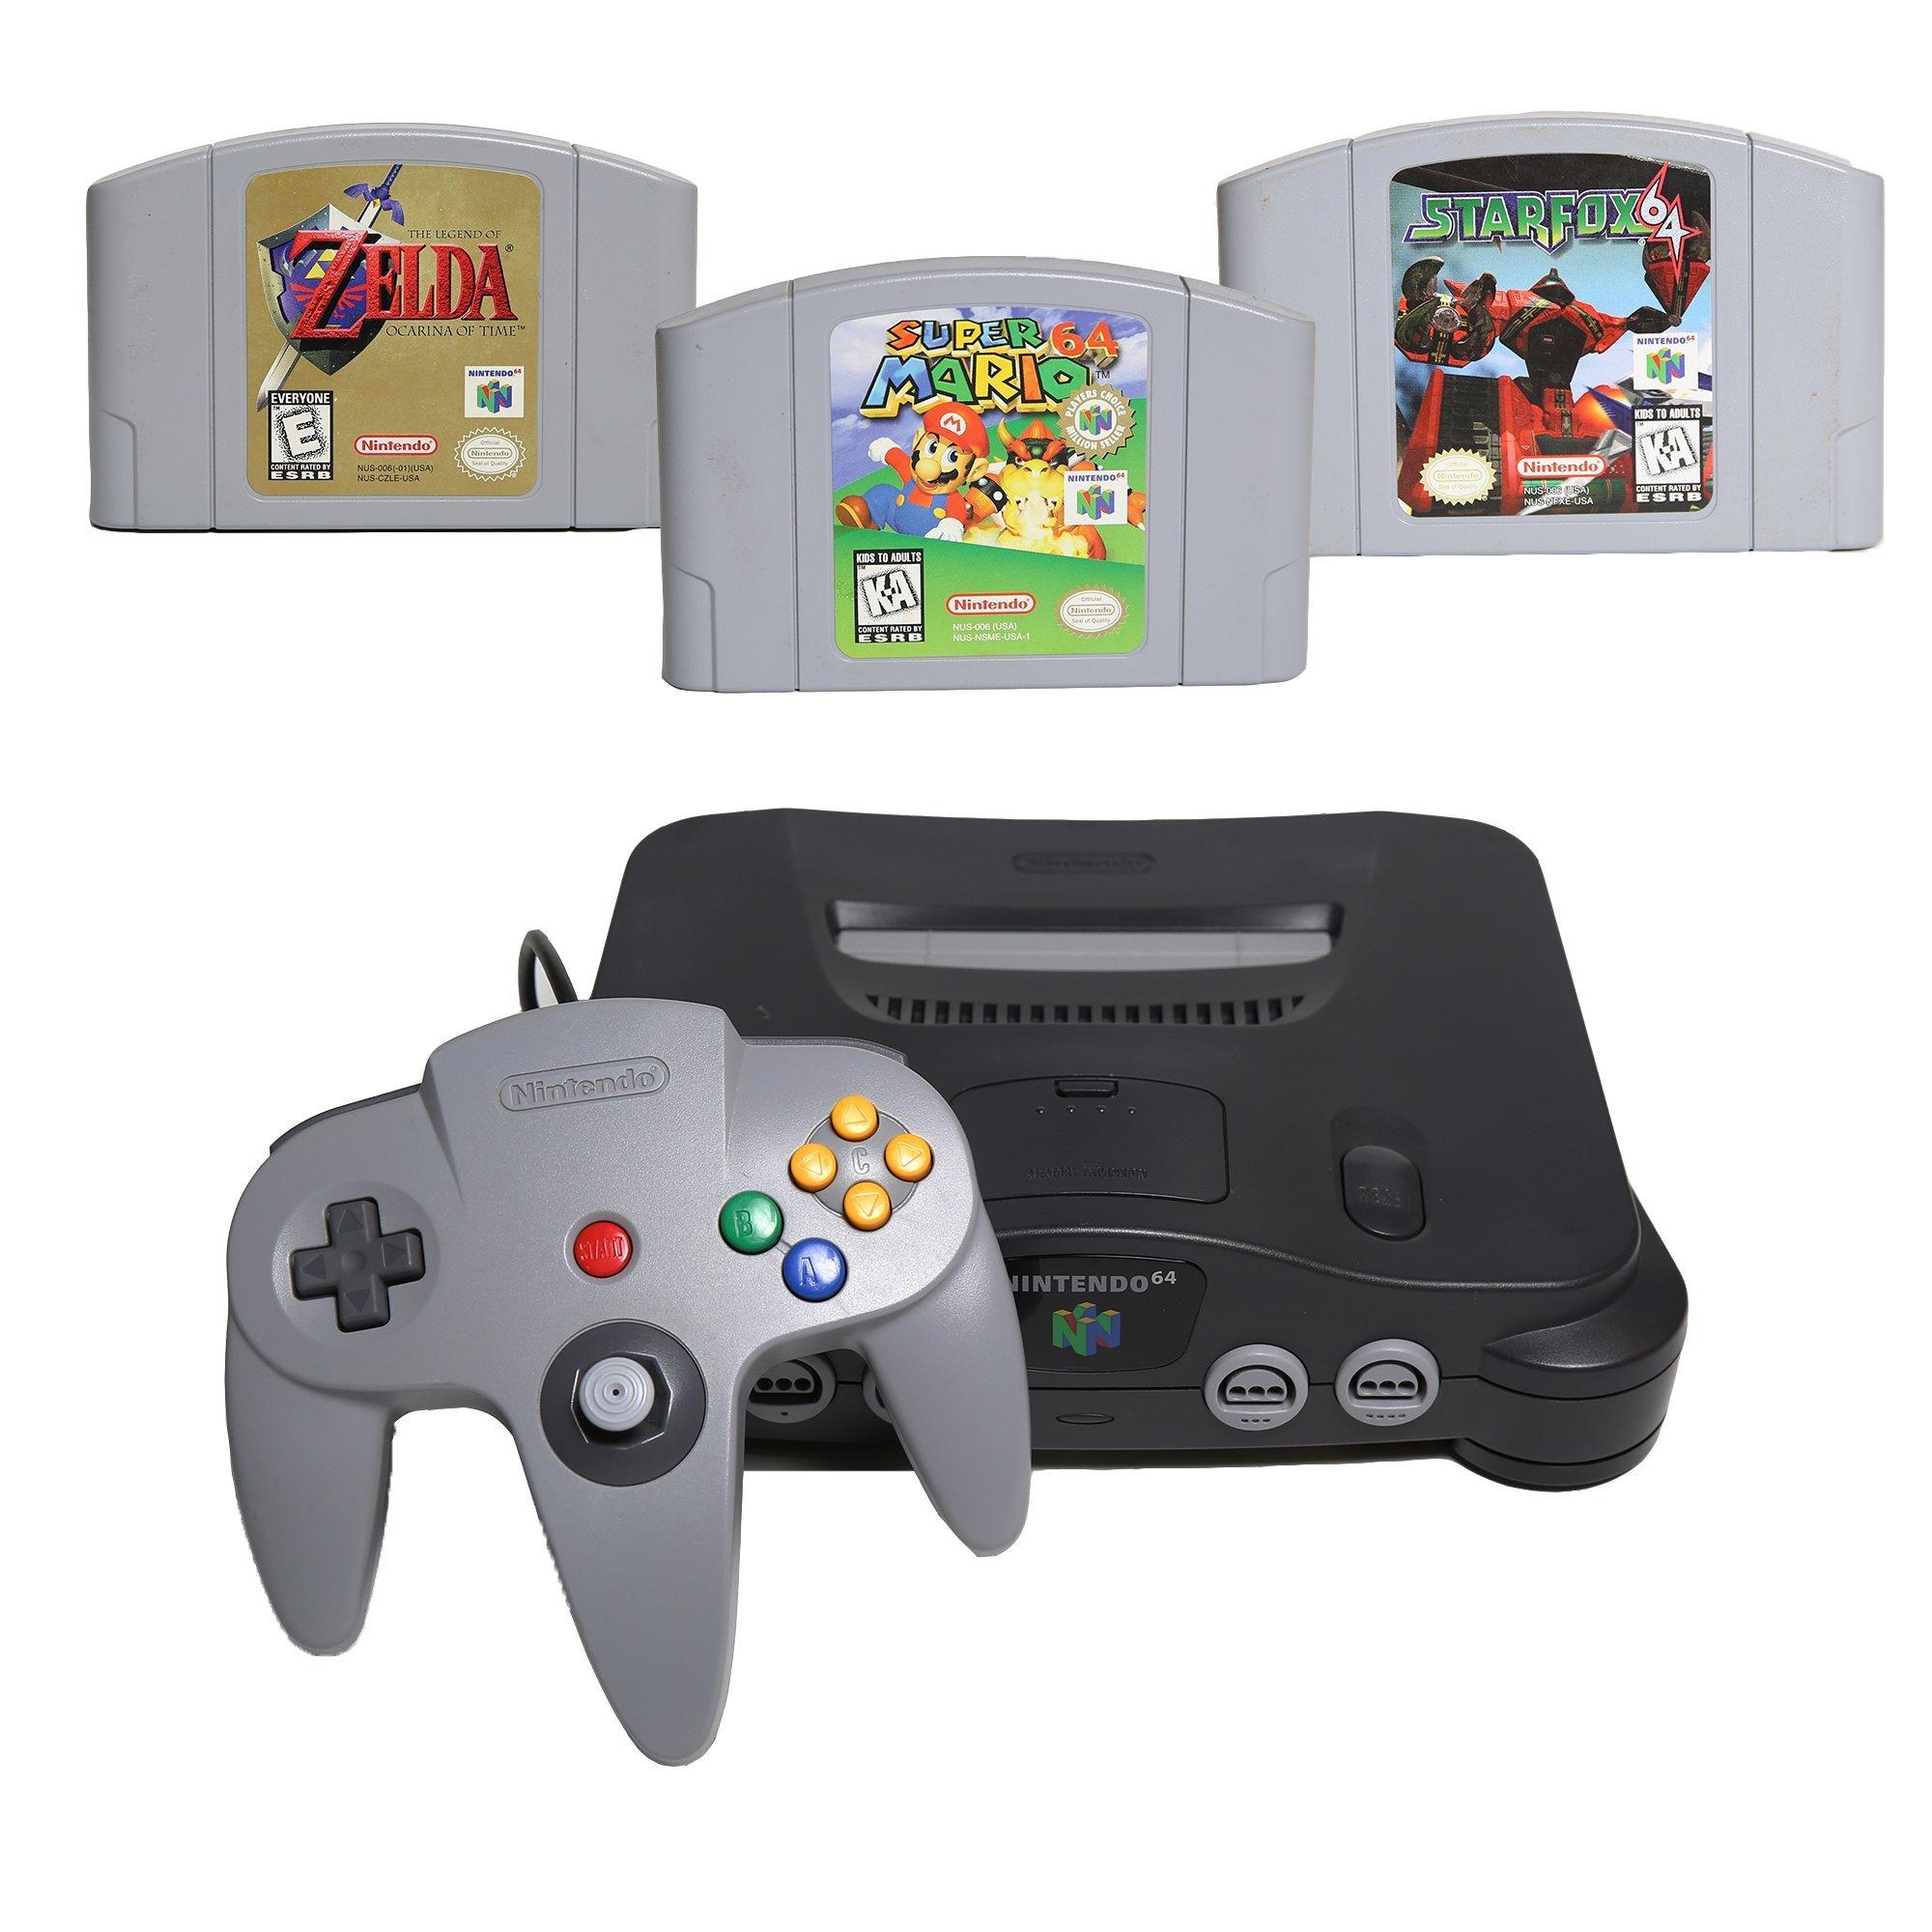 Nintendo 64 играть. Нинтендо 64 игры. Нинтендо 67. Нинтендо 64 в 90. Игры Nintendo 64 контроллер.